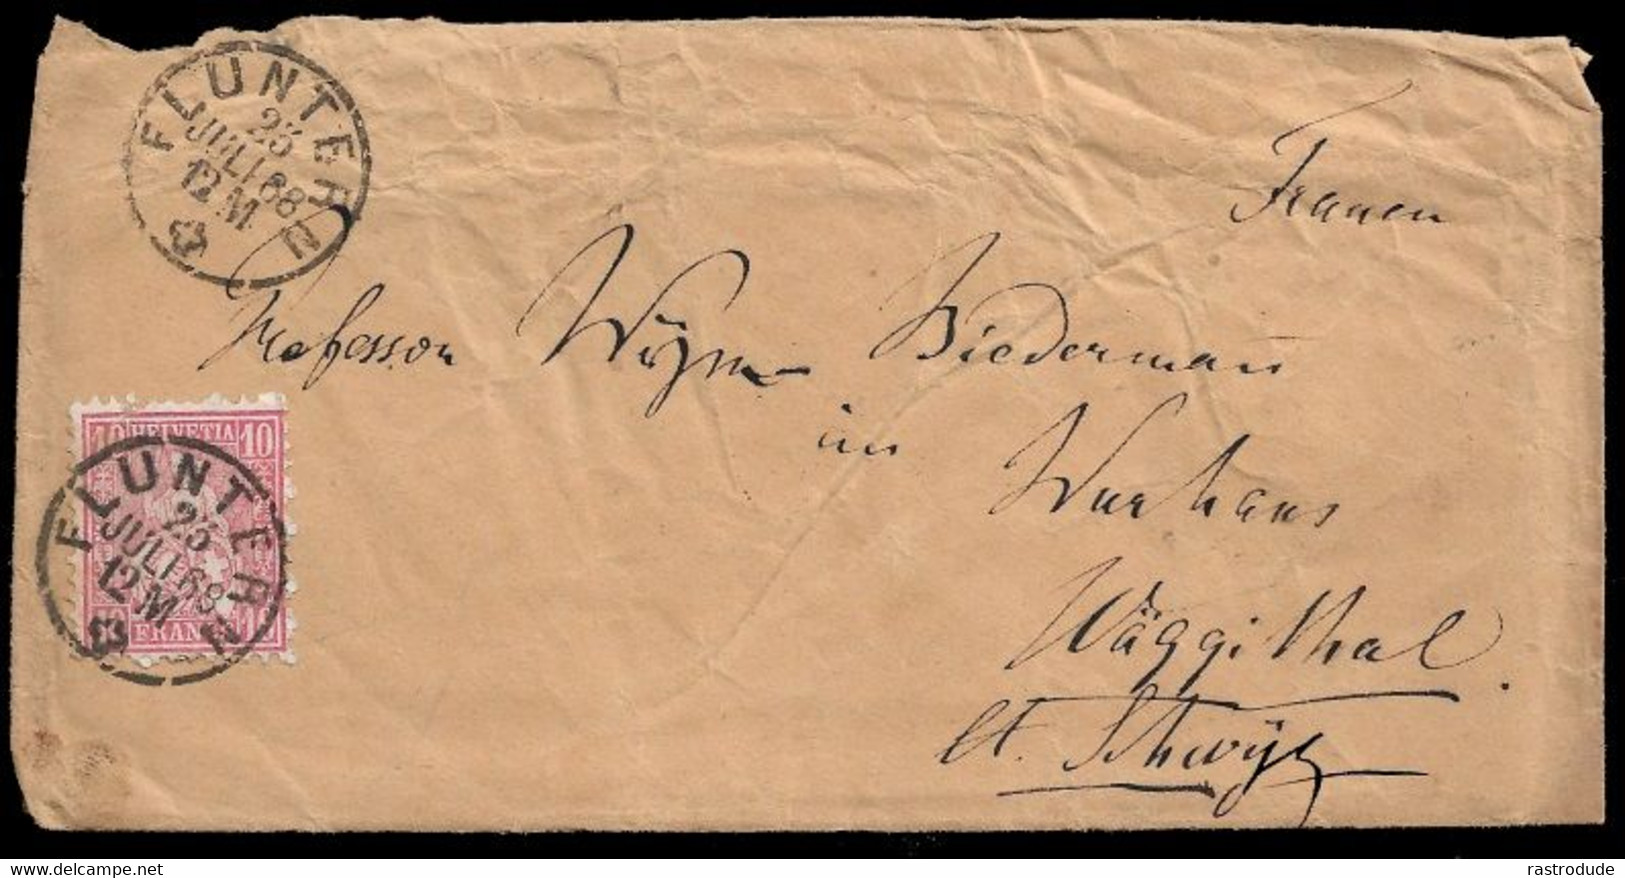 1868, 23 JULI -  SCHWEIZ SUISSE SWITZERLAND - 10Rp BRIEF (SBK 38) - FLUNTERN (ZÜRICH ZH) - Briefe U. Dokumente